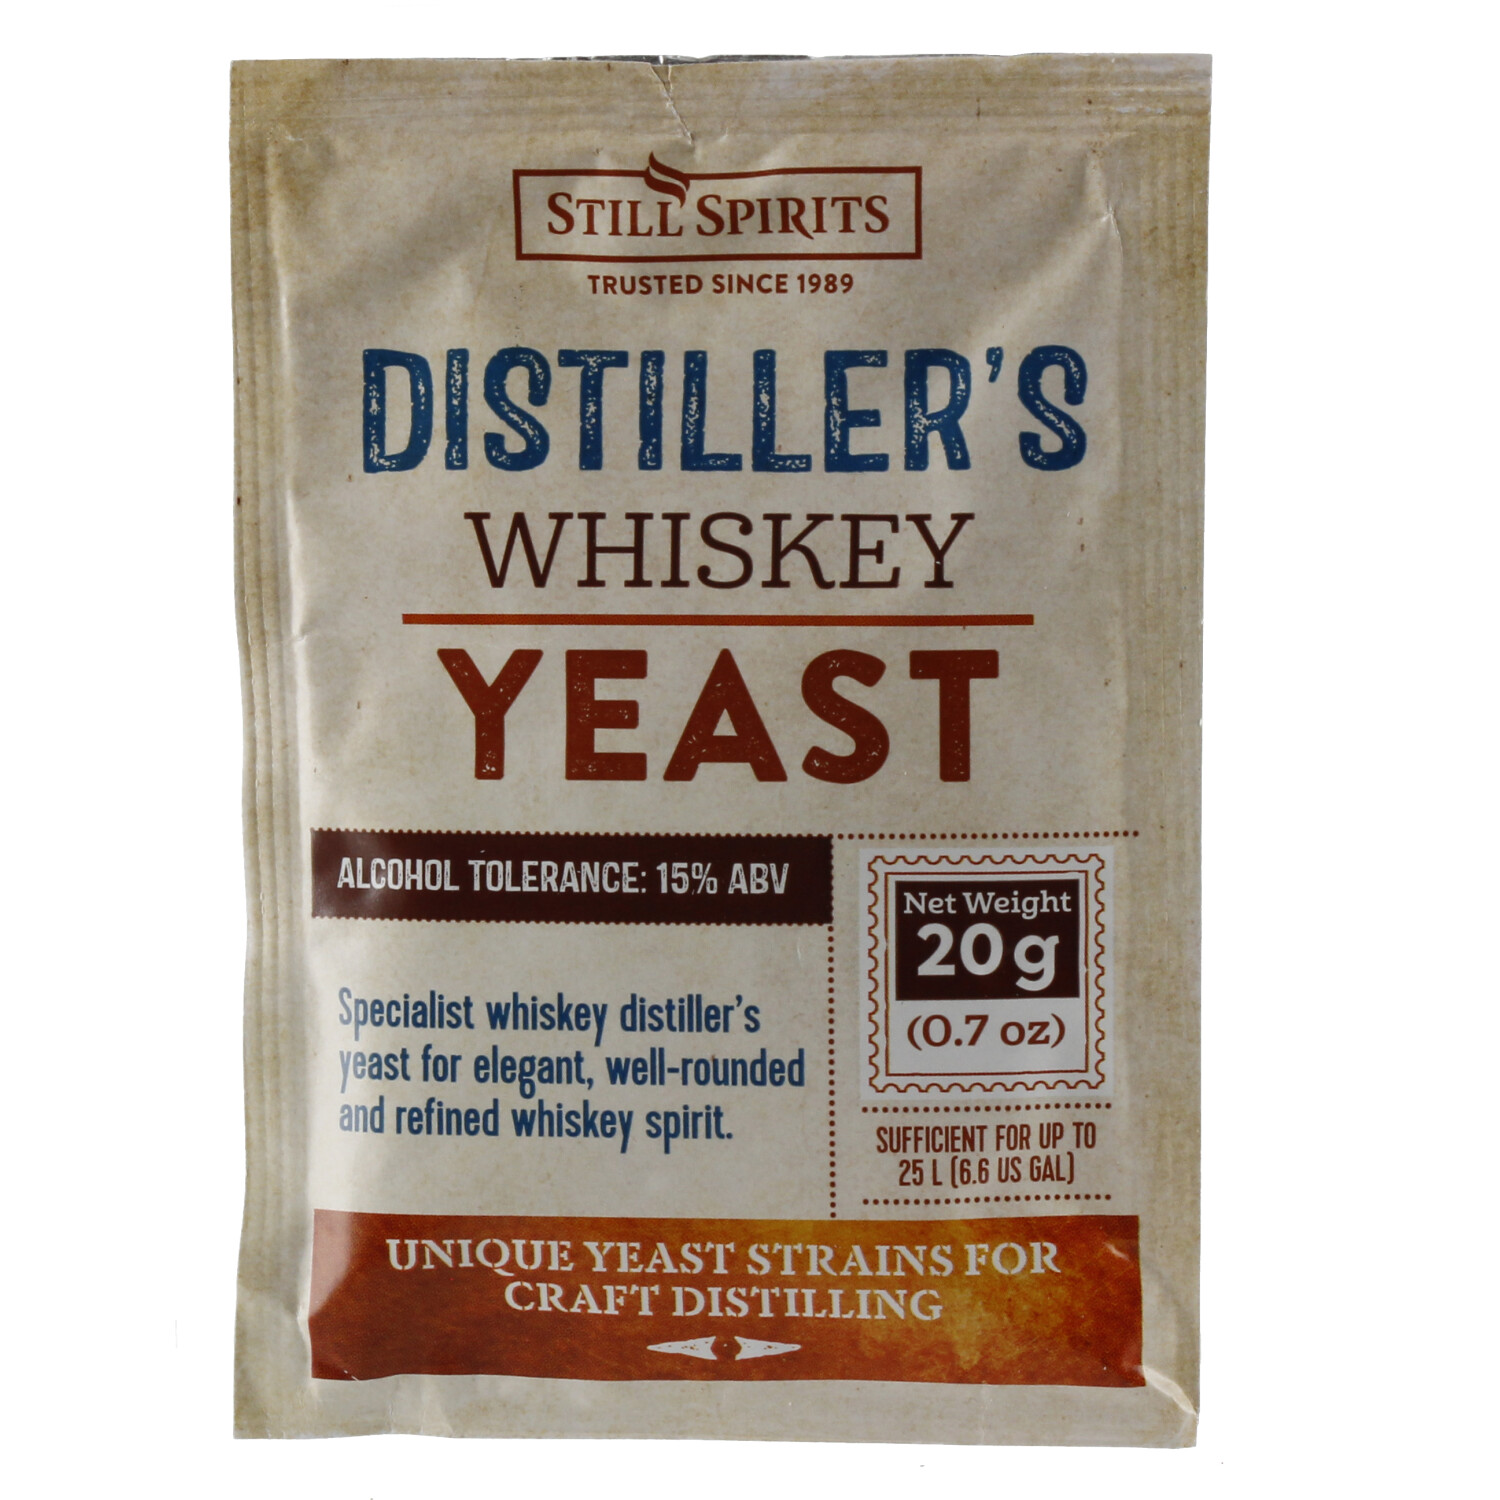 Still Spirits Distiller's Yeast Whiskey 20 g